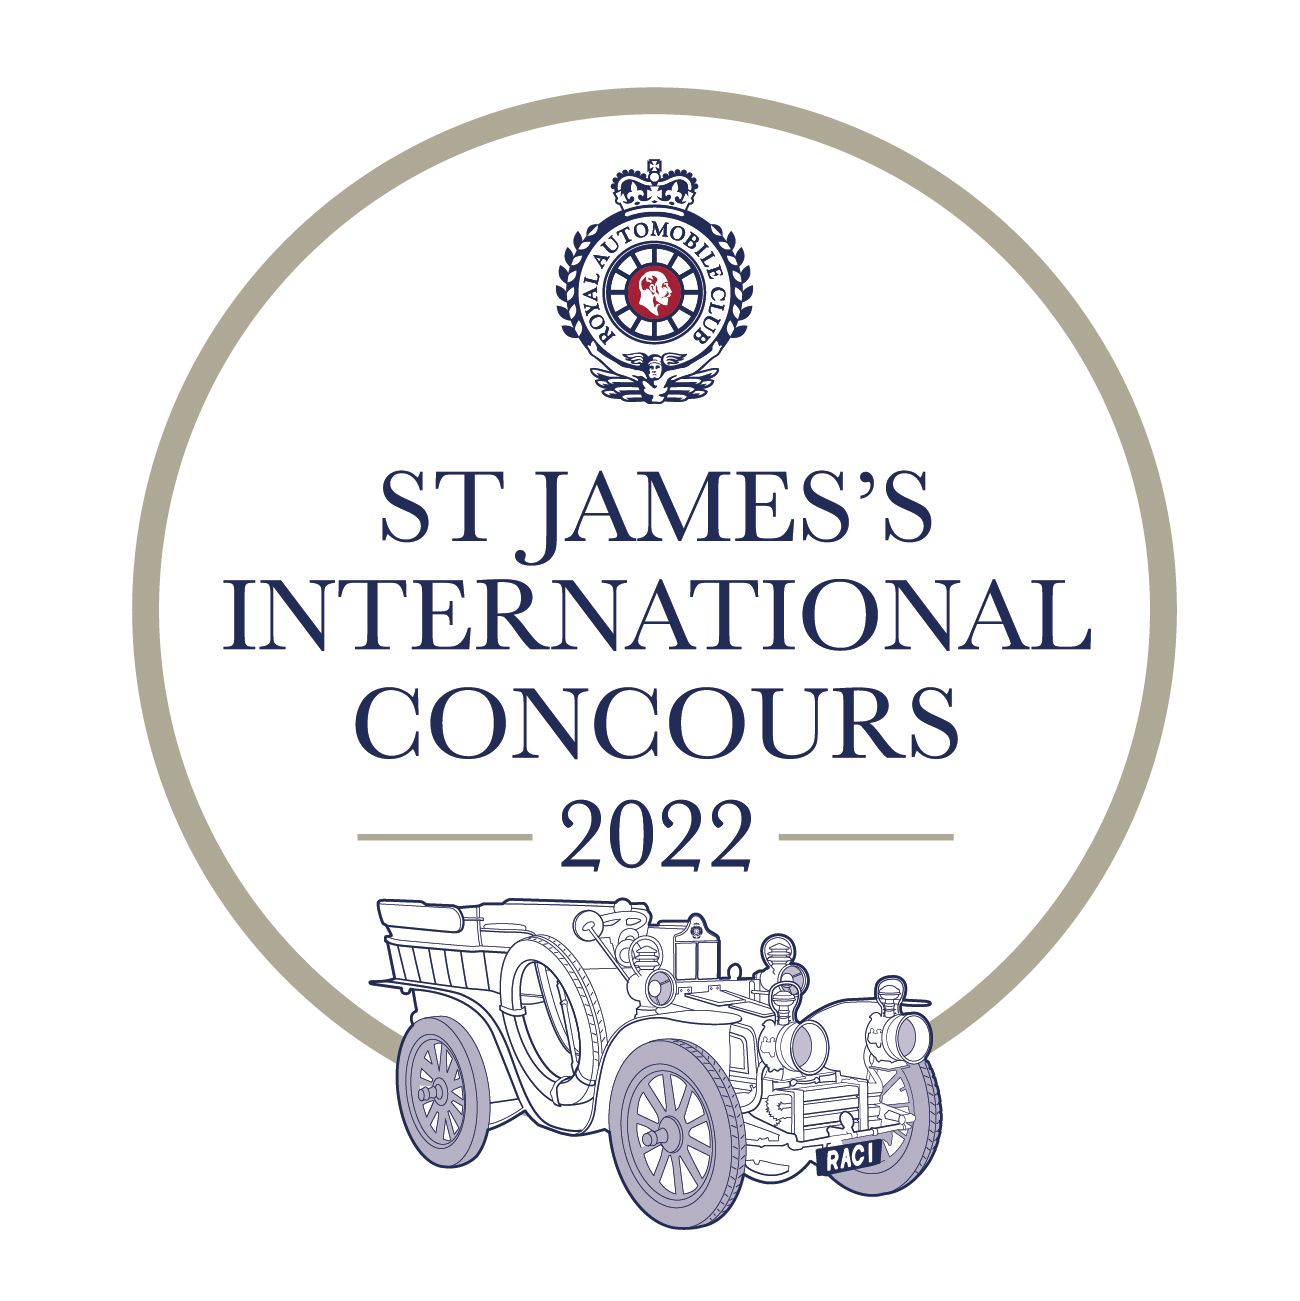 ROYAL AUTOMOBILE CLUB ANNOUNCES THE ST JAMES'S INTERNATIONAL CONCOURS